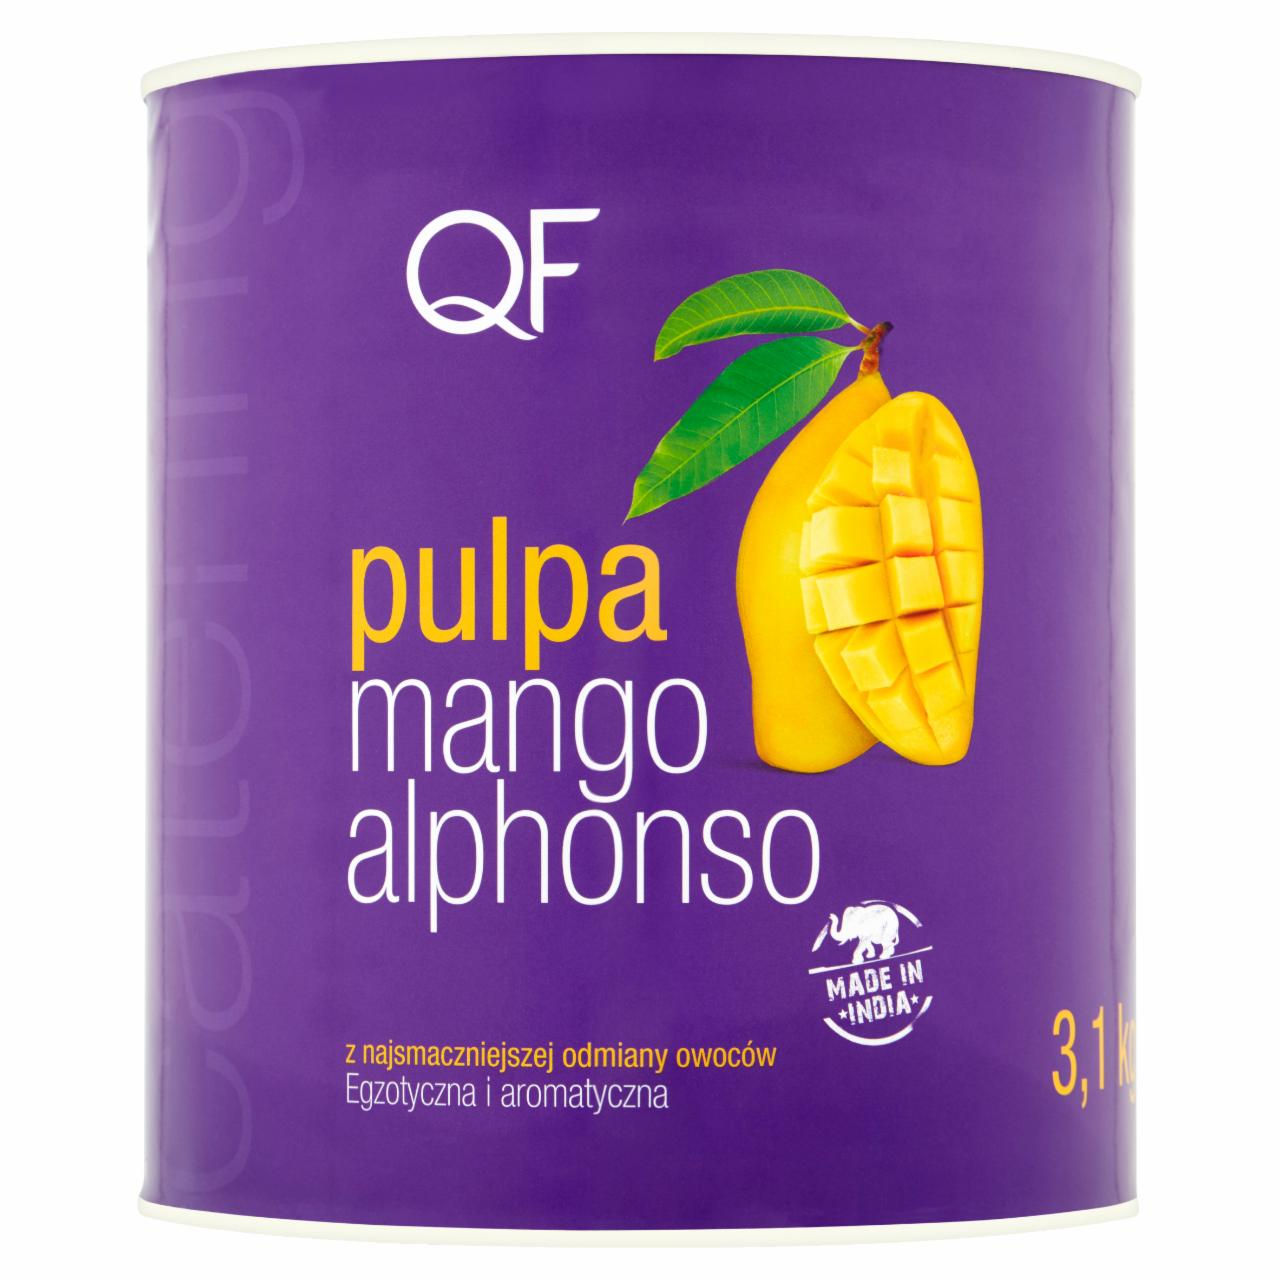 Zdjęcia - QF Pulpa z mango alphonso 3,1 kg